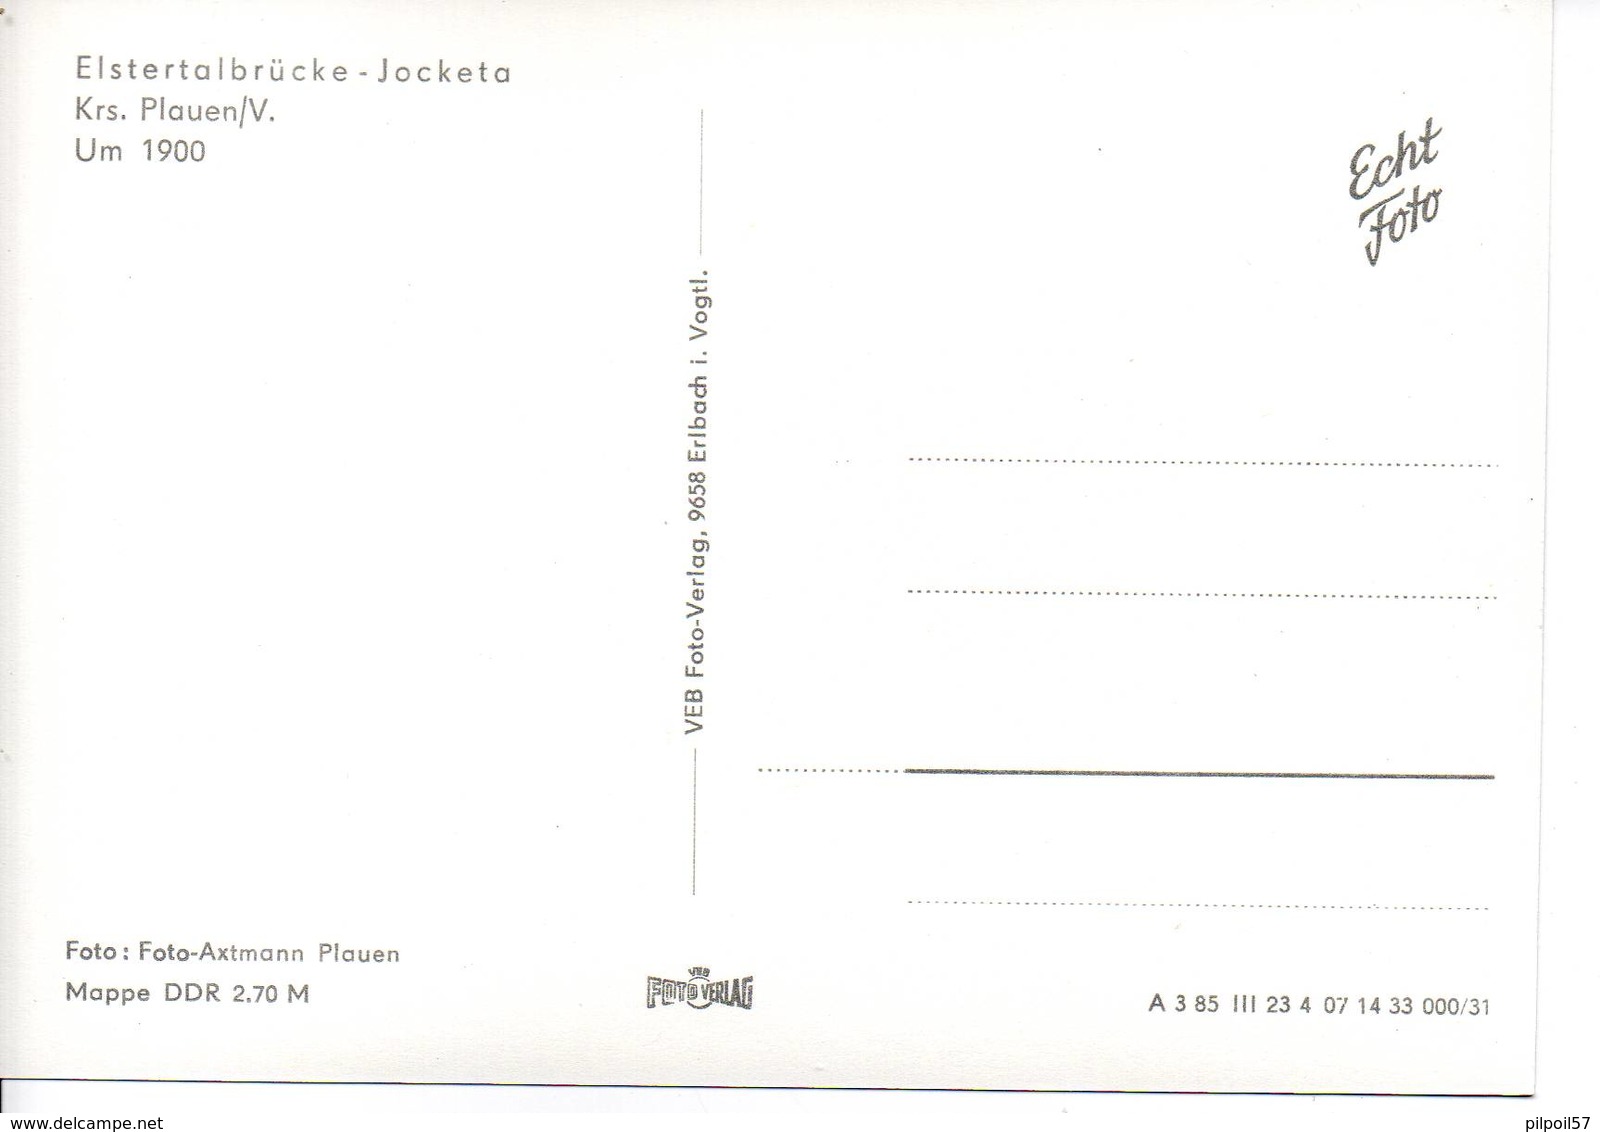 ALLEMAGNE - ELSTERTALBRÜCKE - JOCKETA - Krs. Plauen/V - Format 10X14,4 - (reproduction) - Poehl